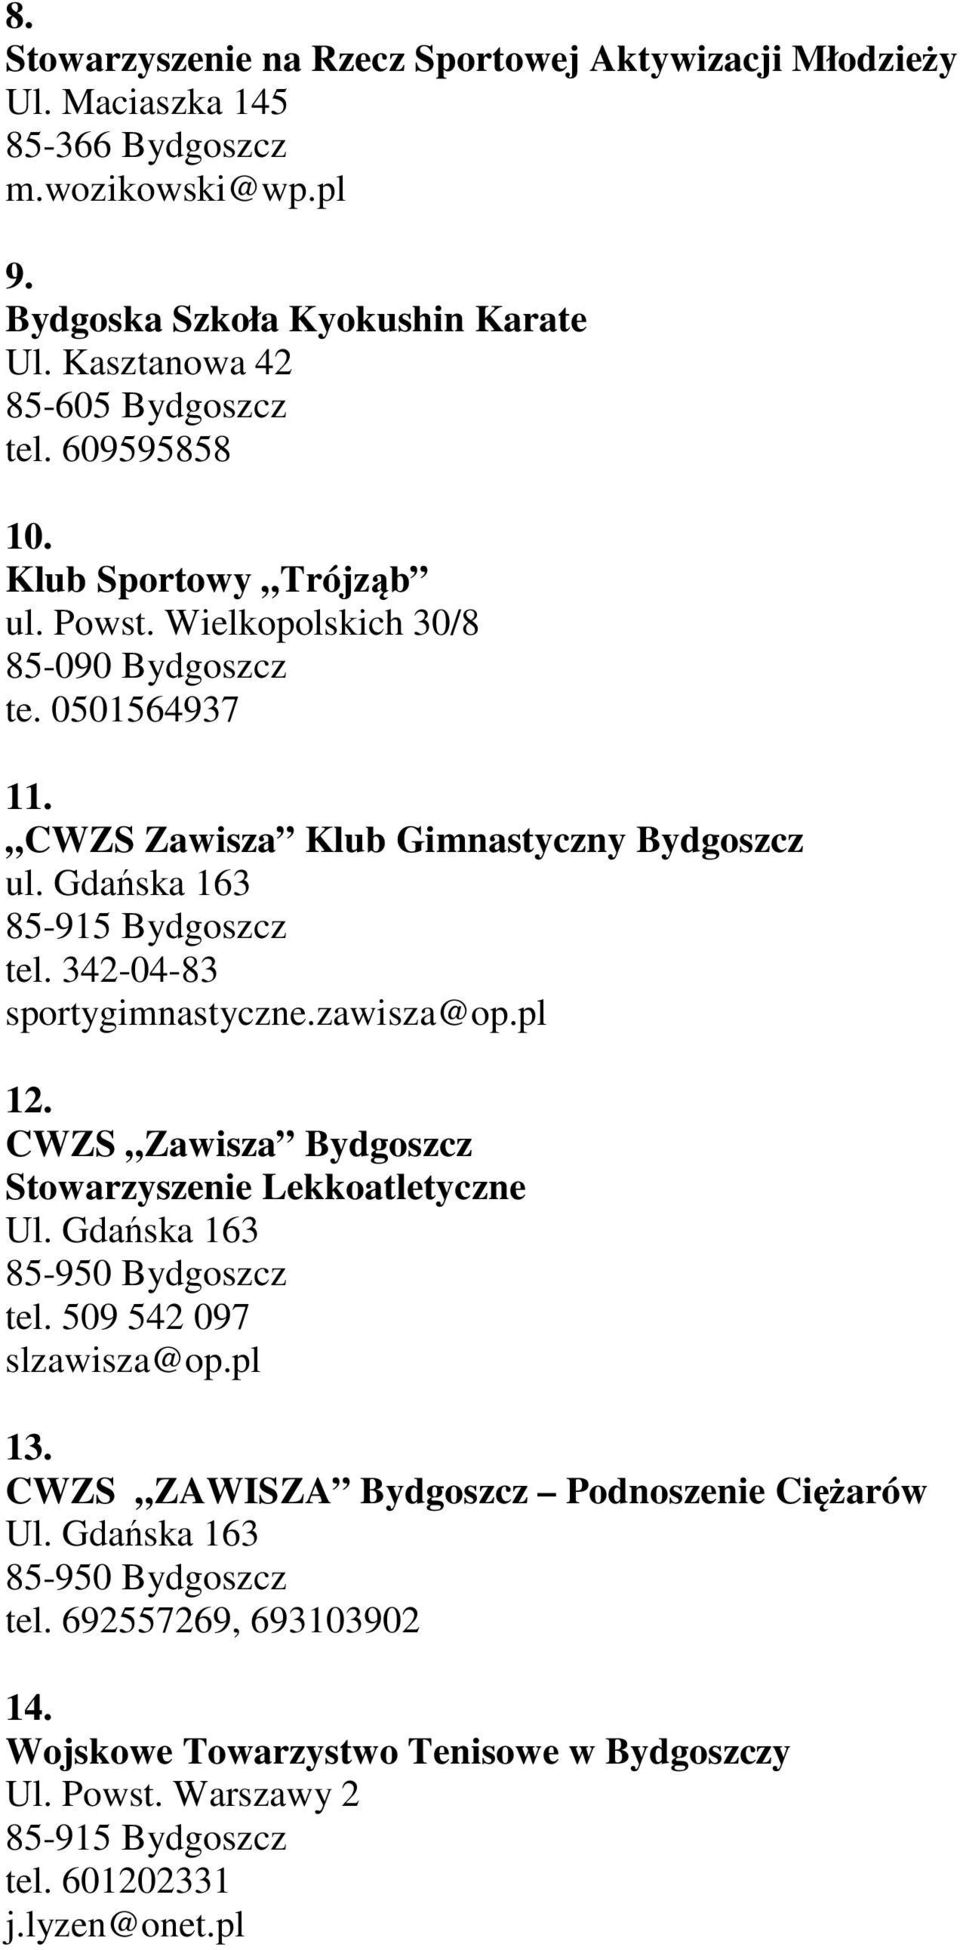 CWZS Zawisza Klub Gimnastyczny Bydgoszcz ul. Gdańska 163 tel. 342-04-83 sportygimnastyczne.zawisza@op.pl 12.